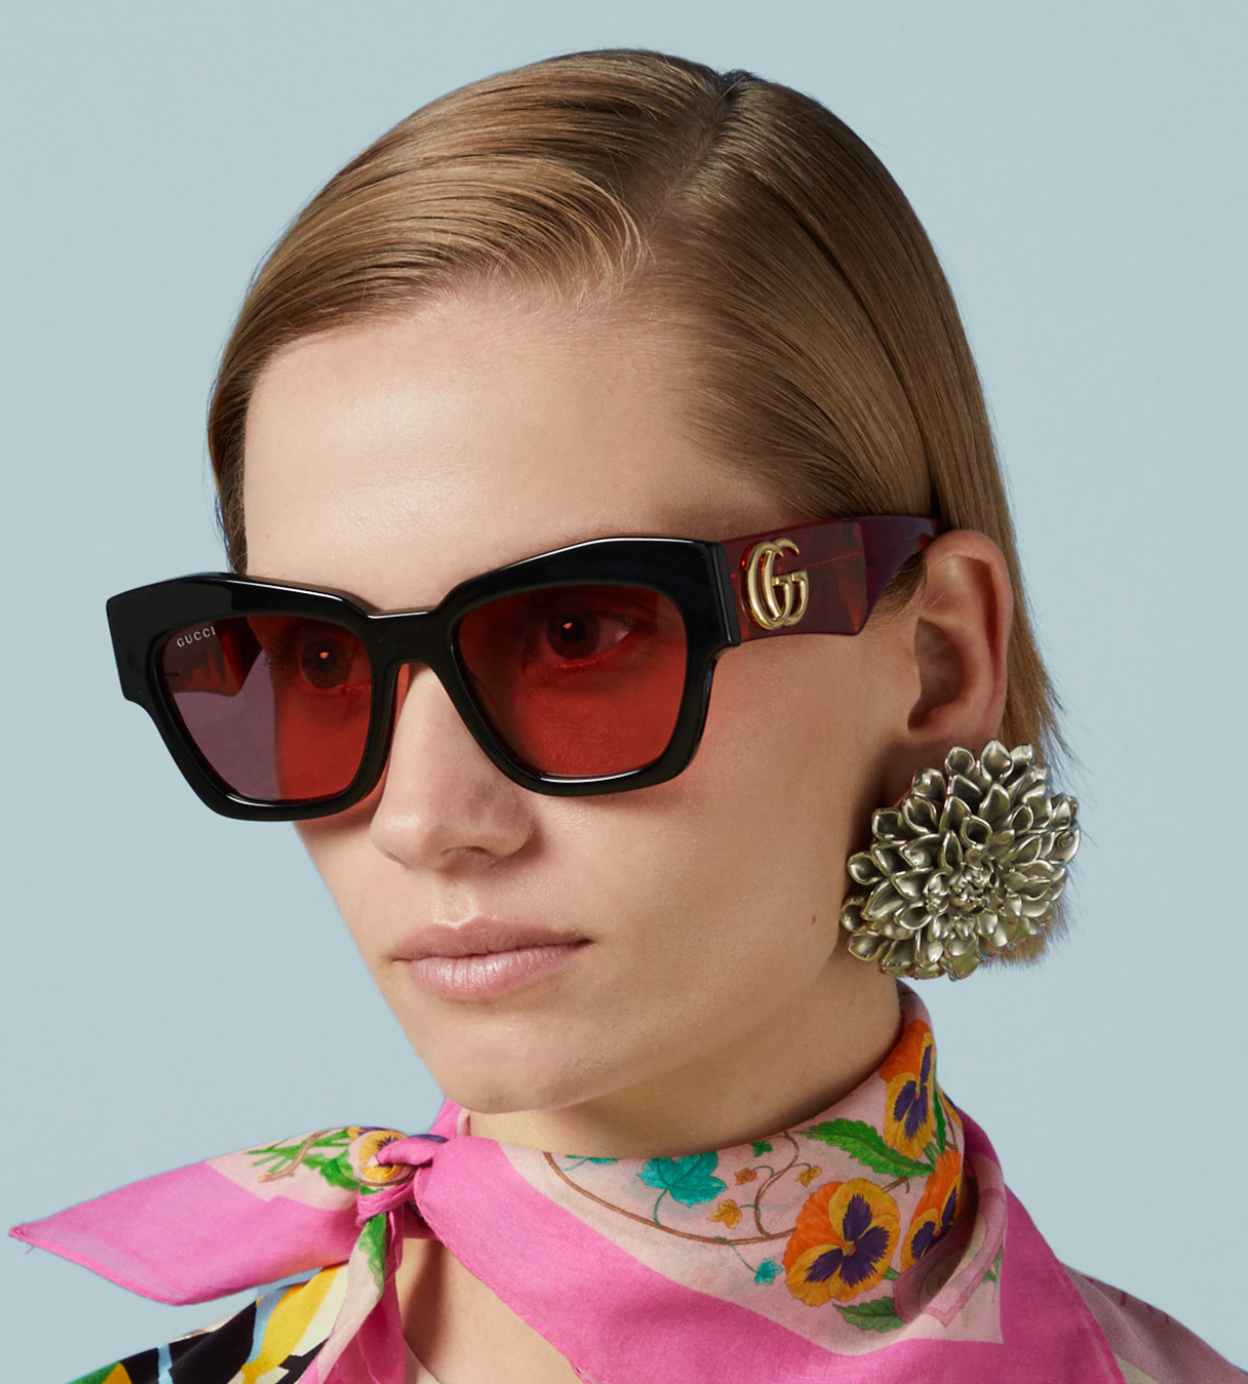 Gucci GG1422S-005 55mm New Sunglasses